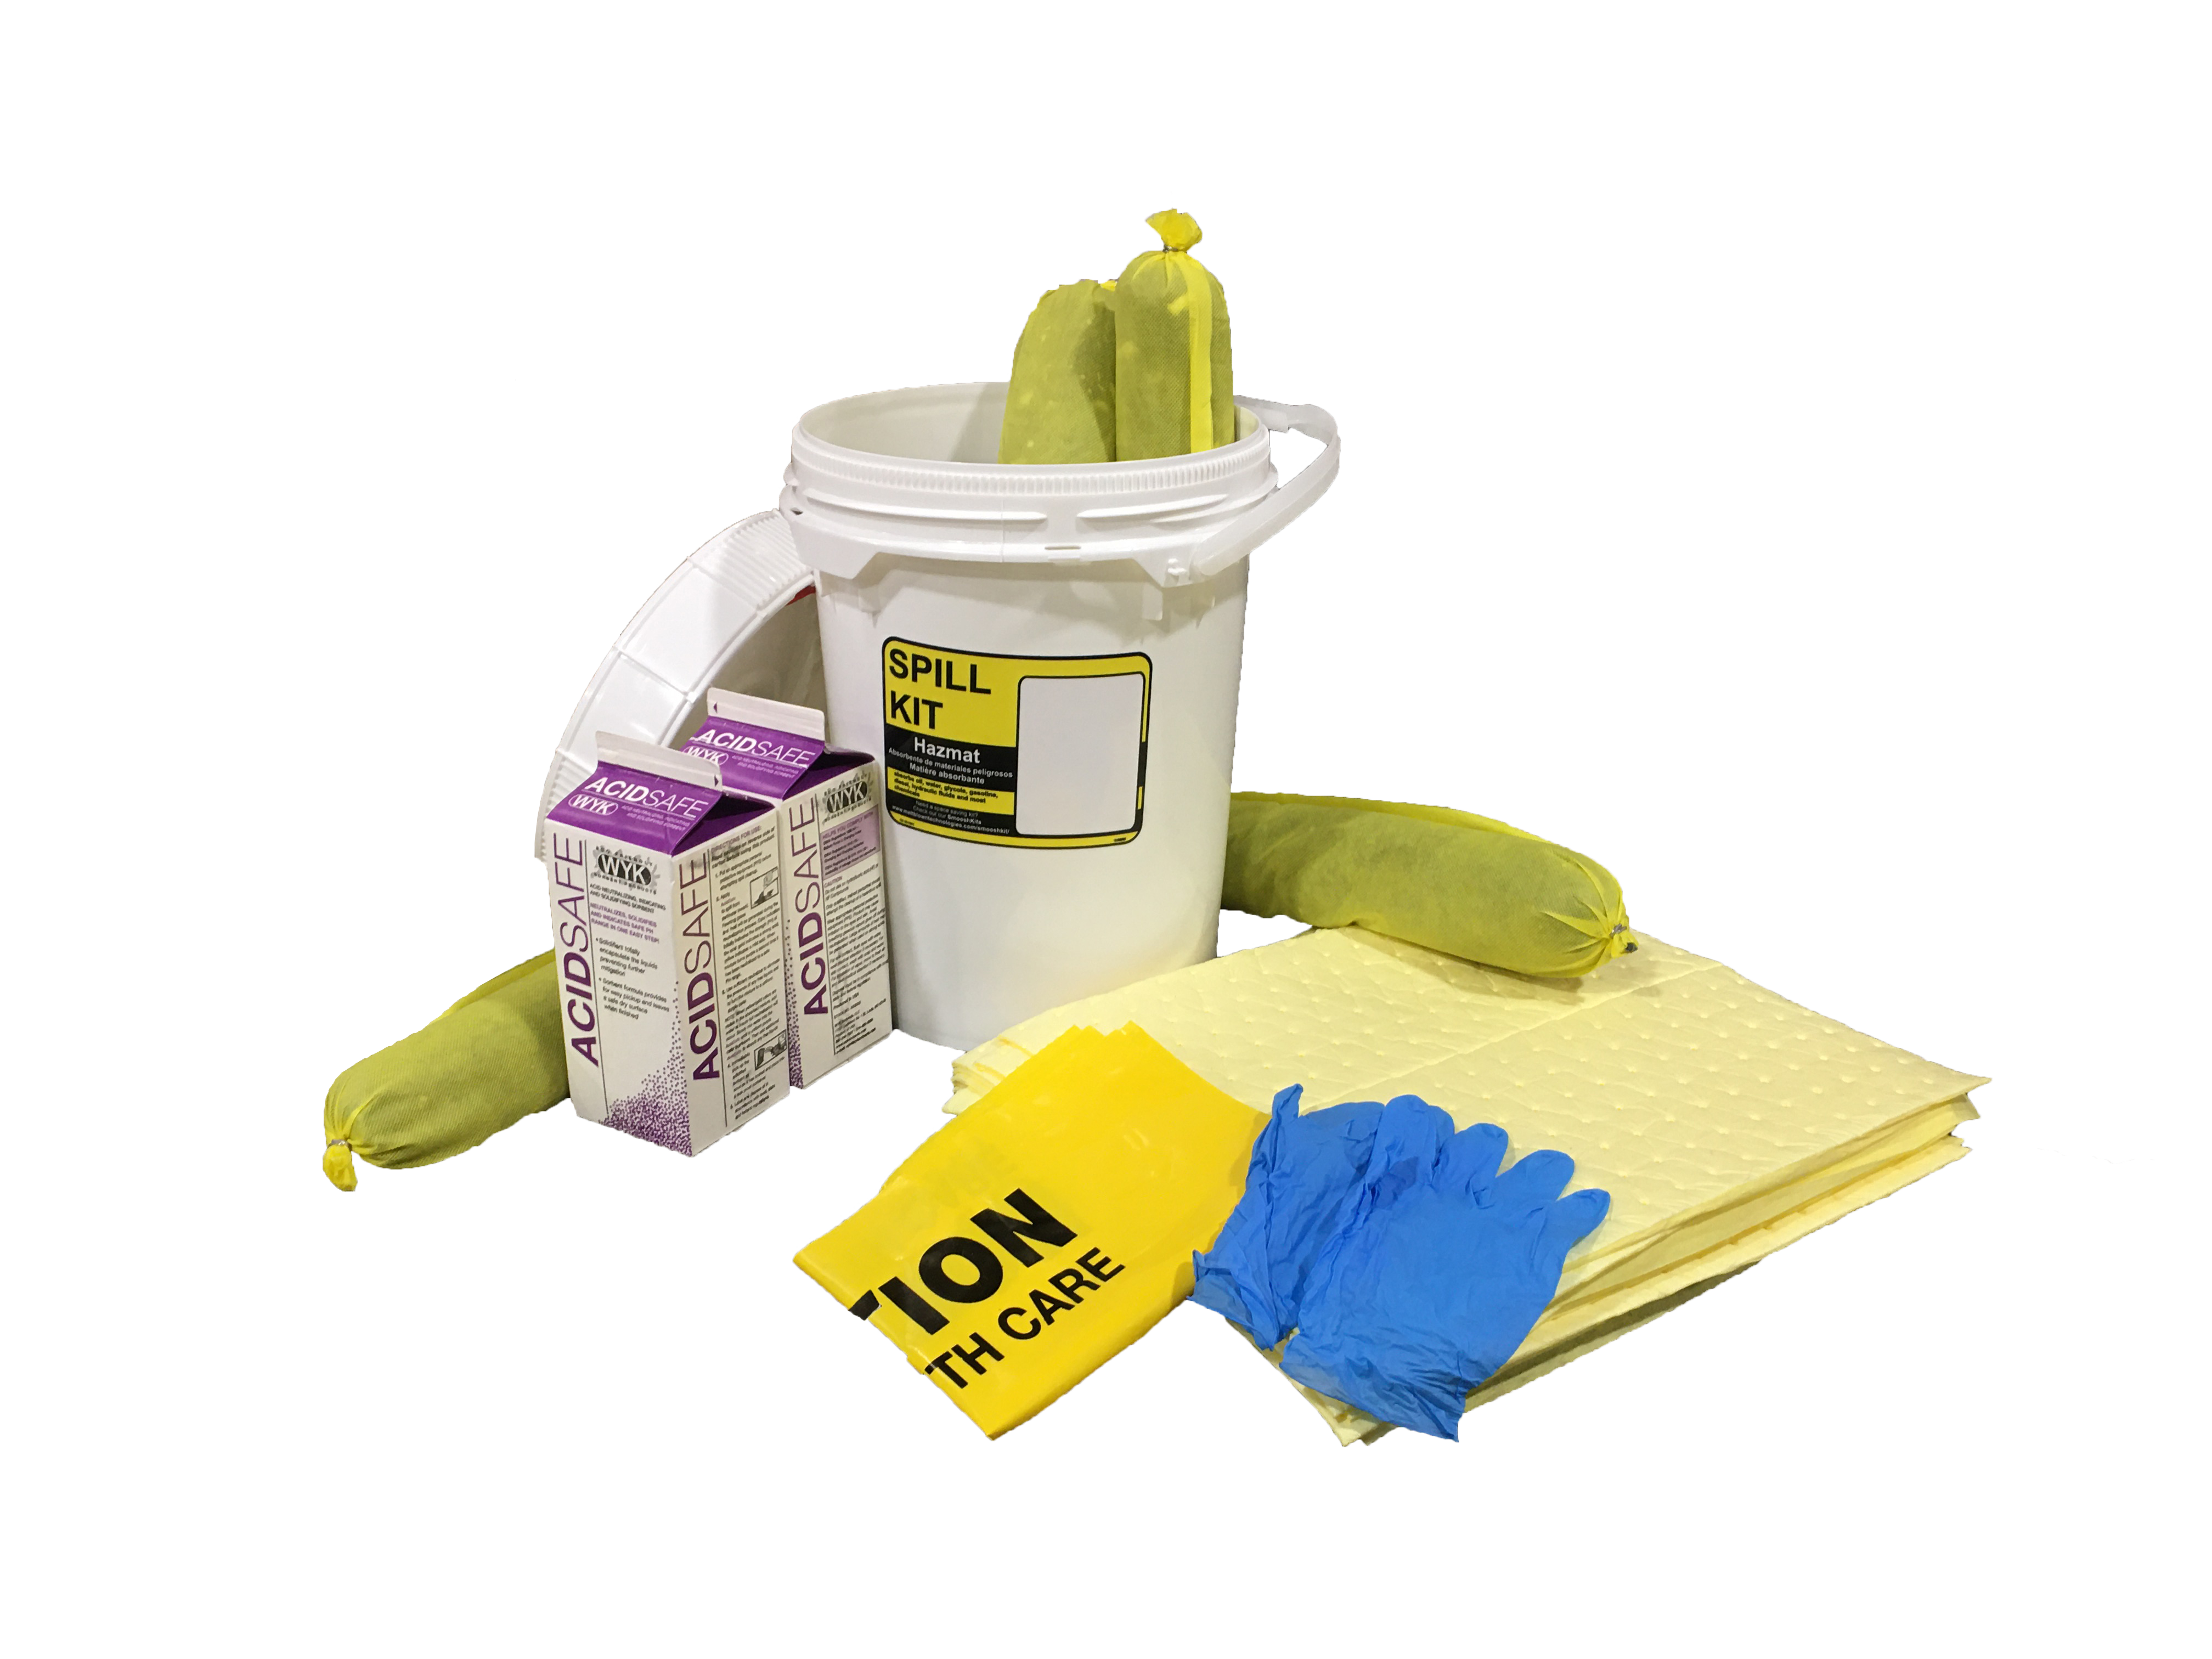 Hazmat - acid-bucket spill kit